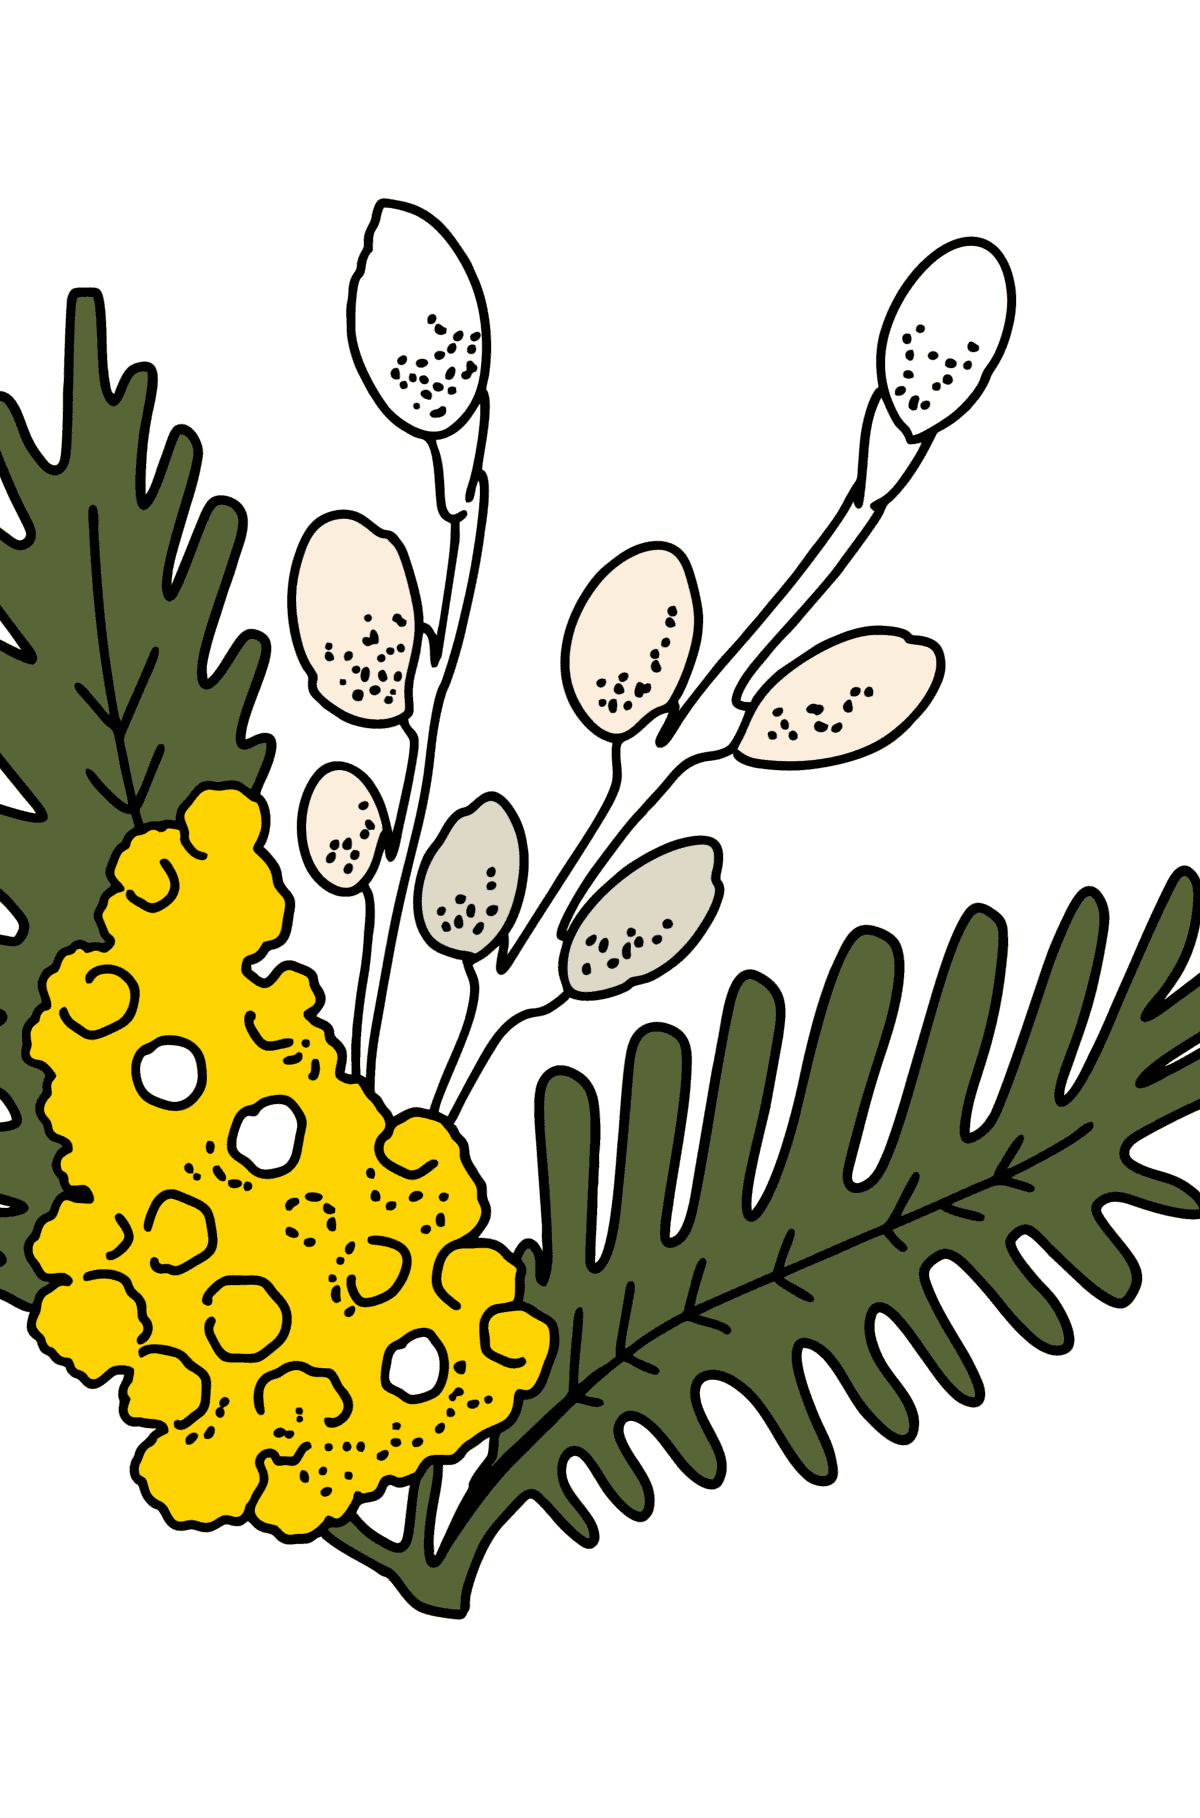 Mewarnai gambar mimosa dan willow - Mewarnai gambar untuk anak-anak